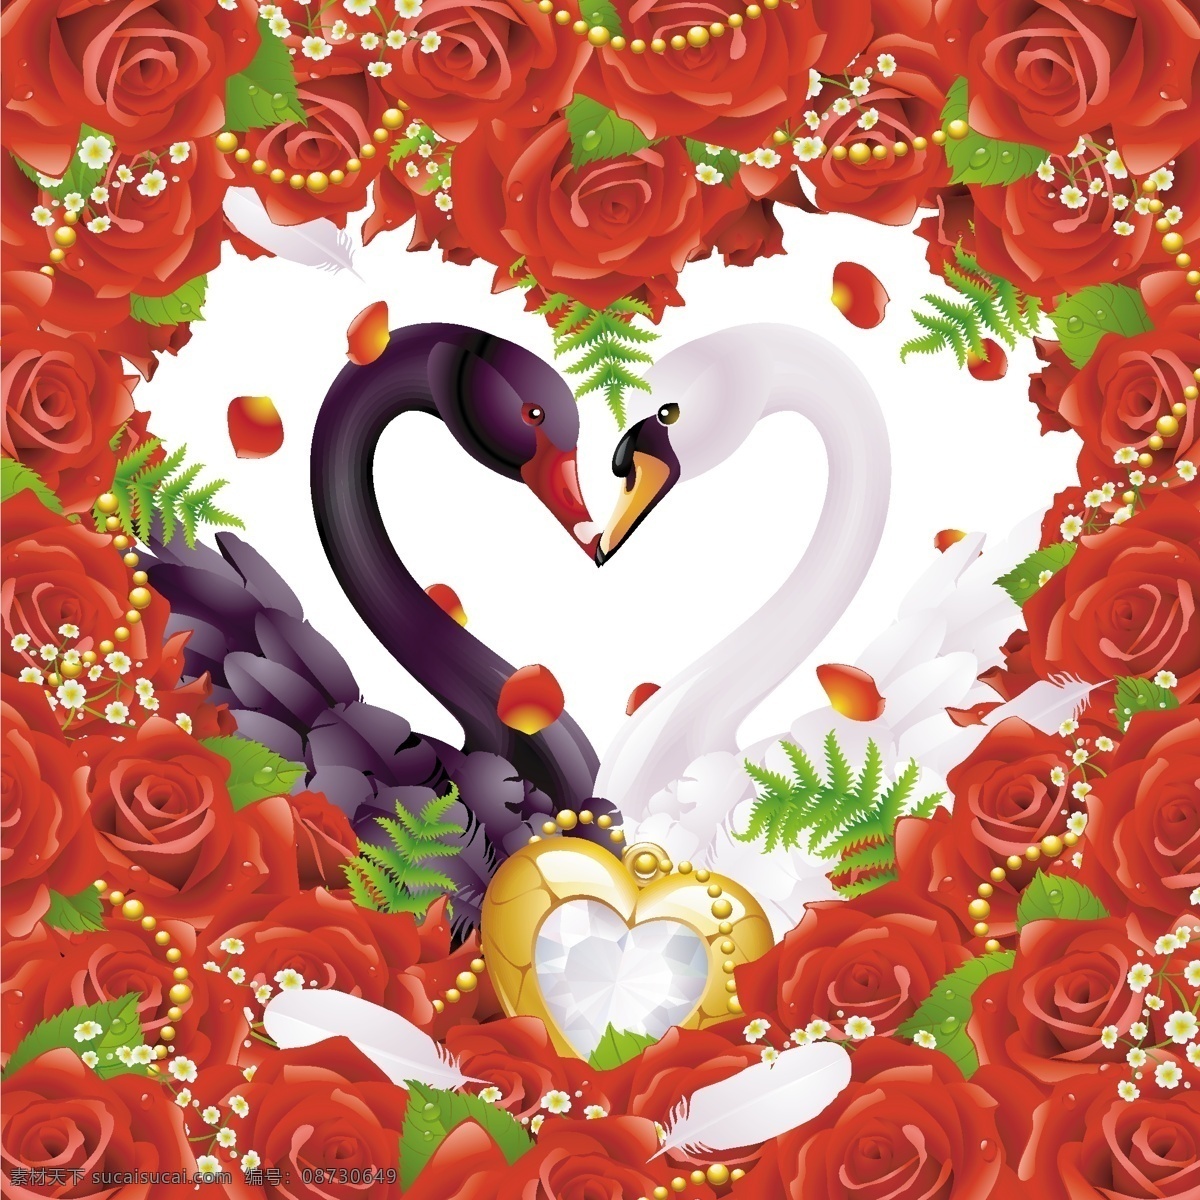 爱浪 漫 玫瑰红 天鹅 主题 矢量 爱情 白天鹅 红玫瑰 浪漫 玫瑰 项链 心形 珠宝 白天 向量的爱